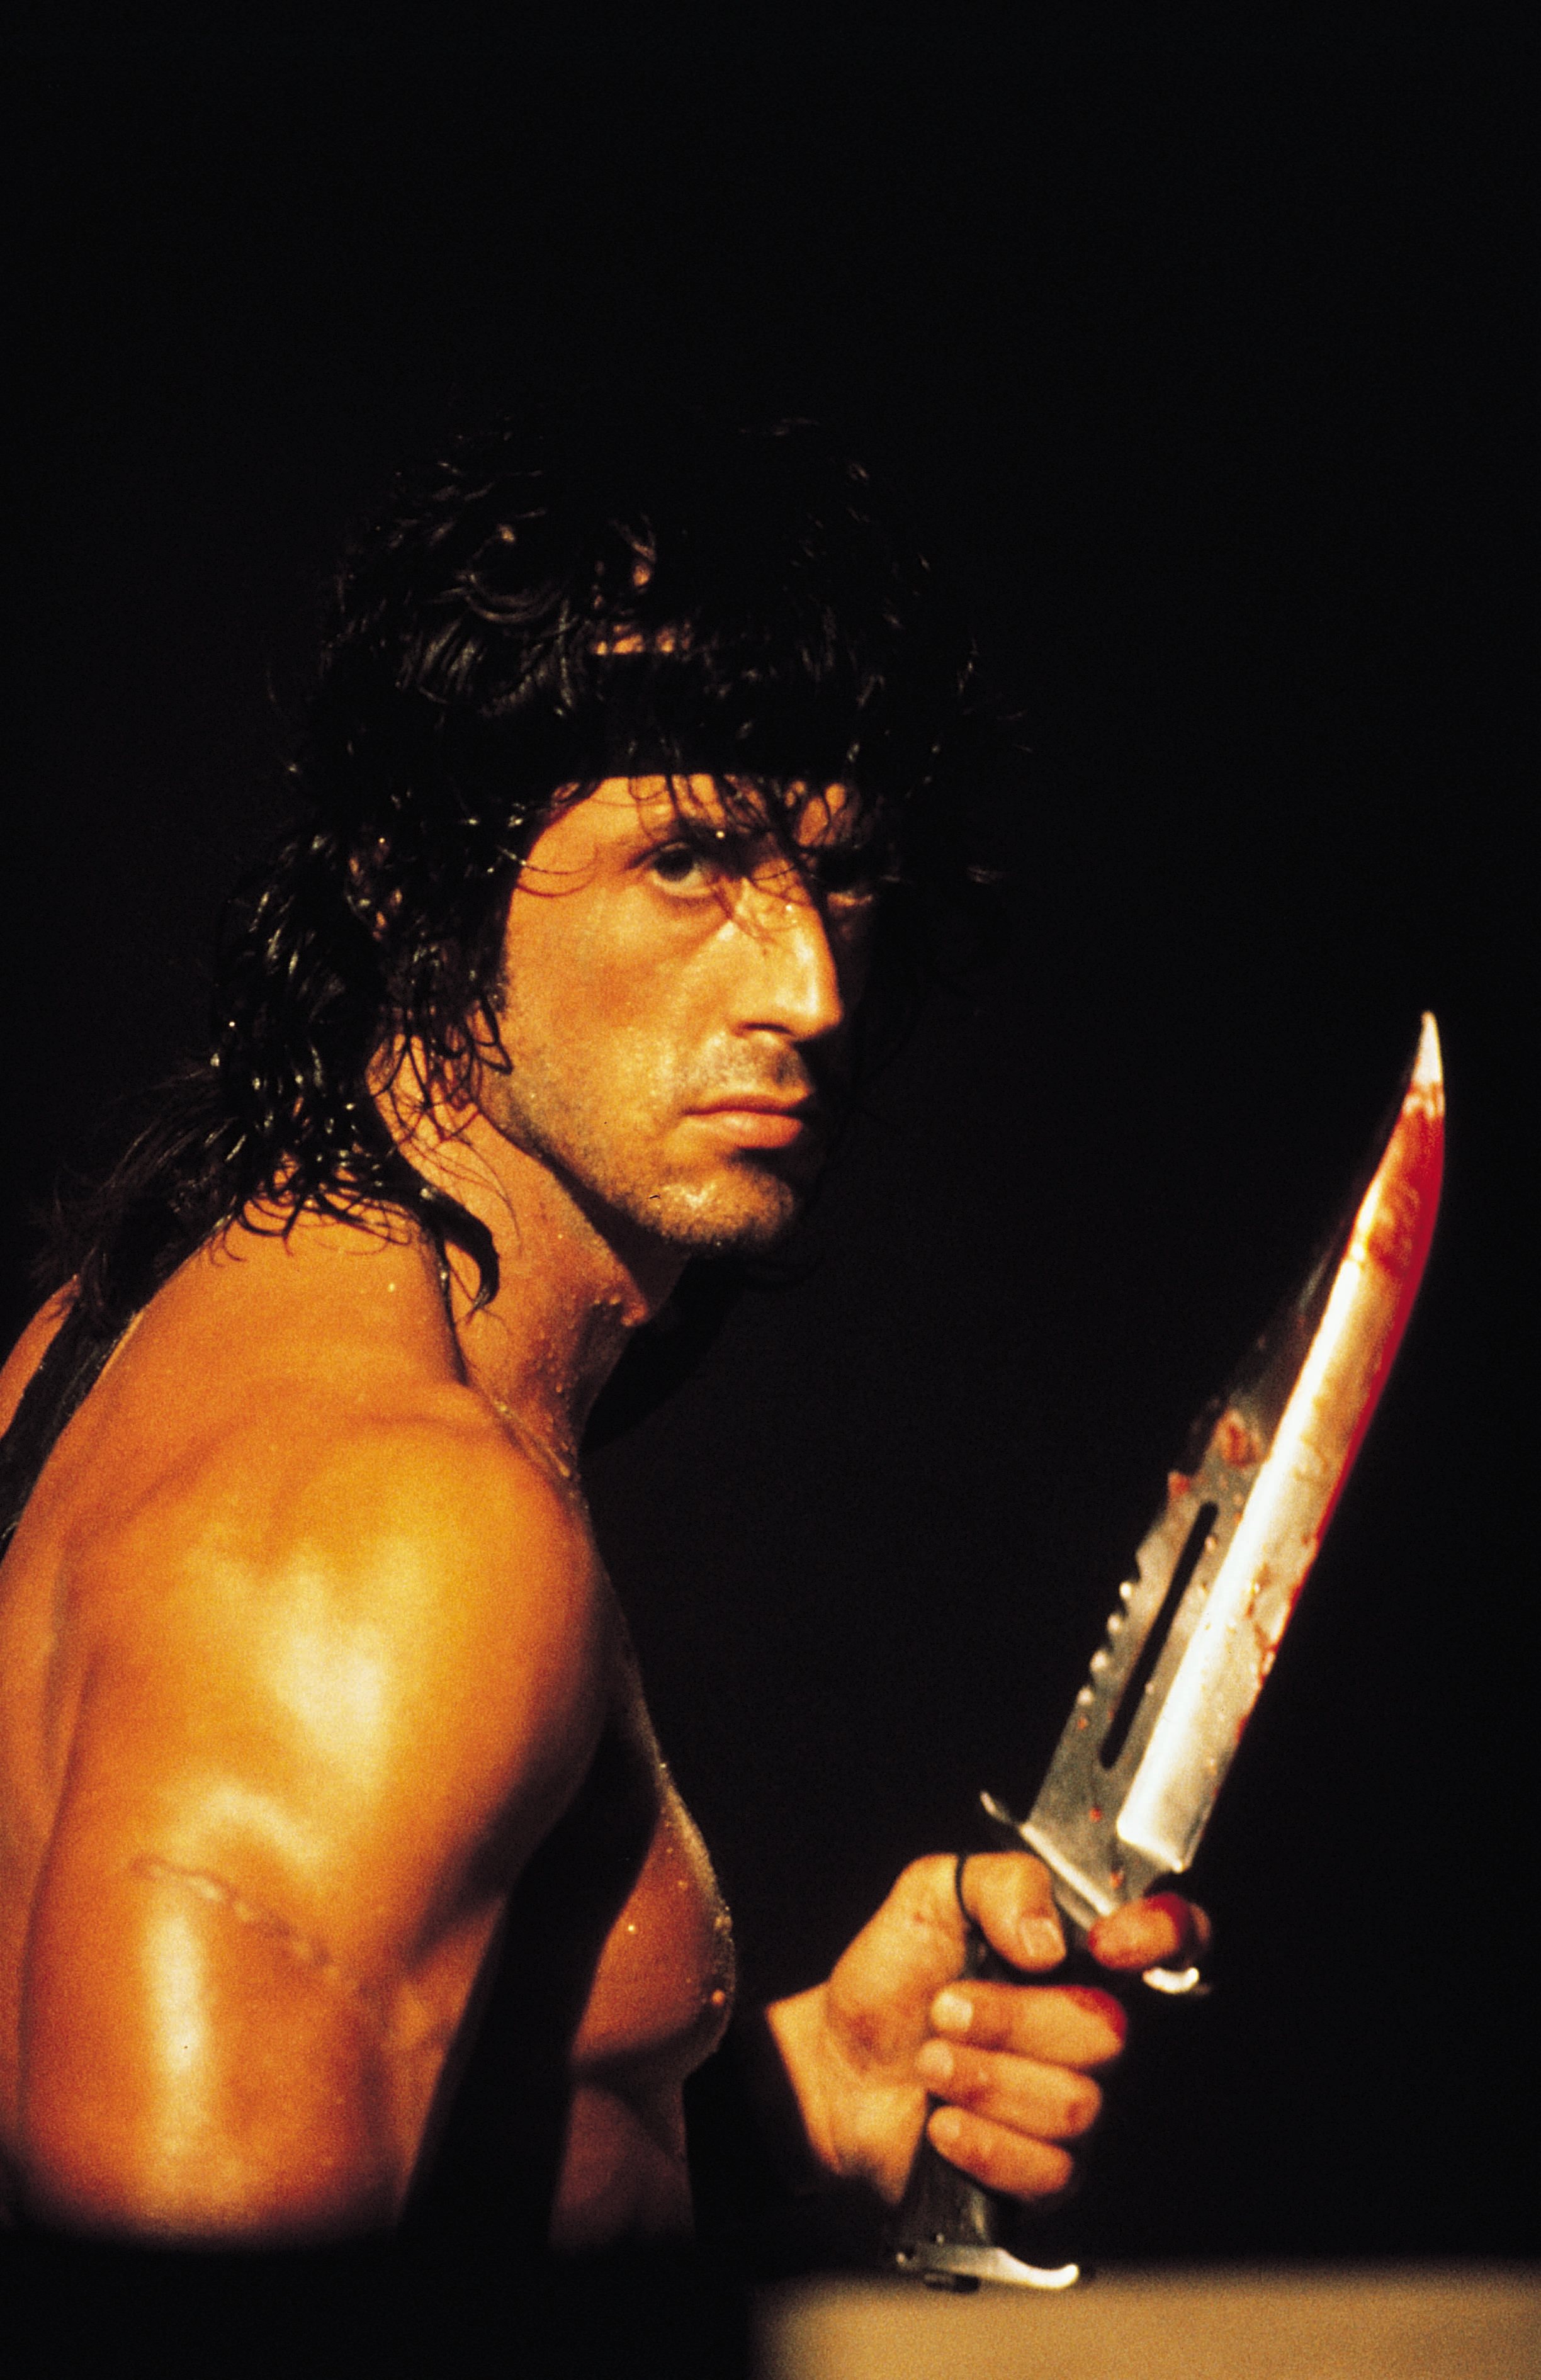 Rambo 3.